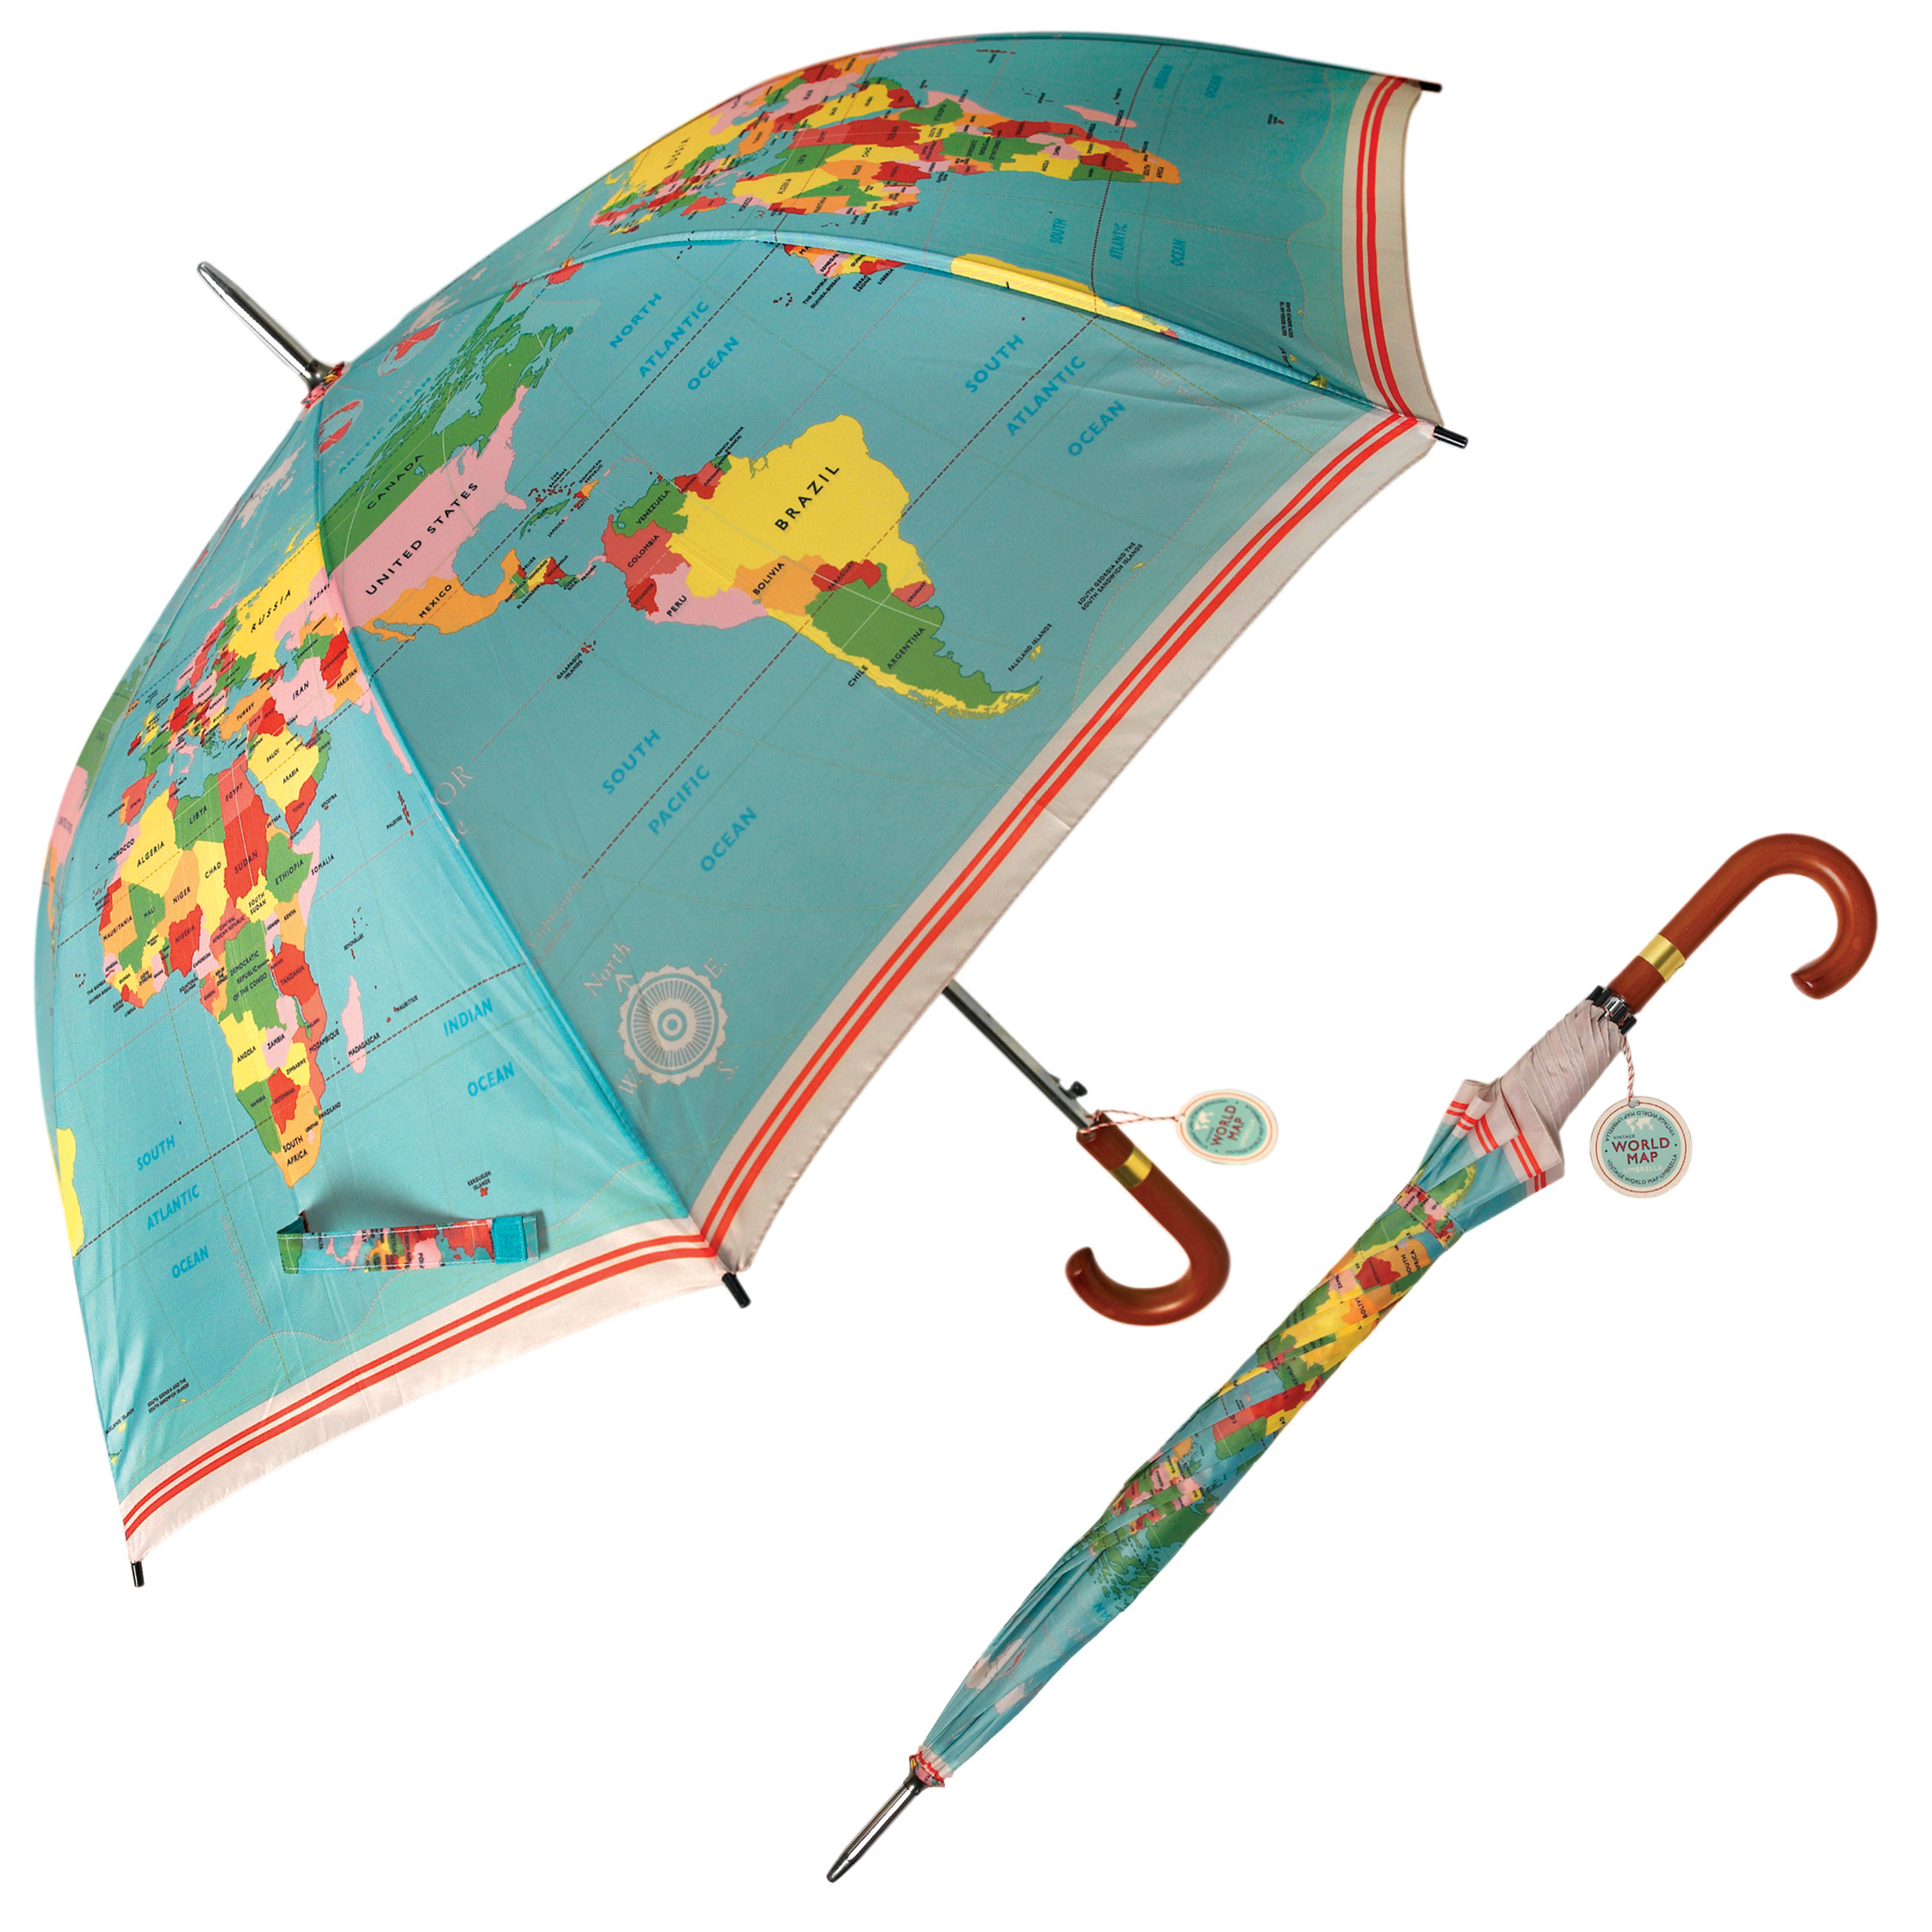 Parapluie pour hommes